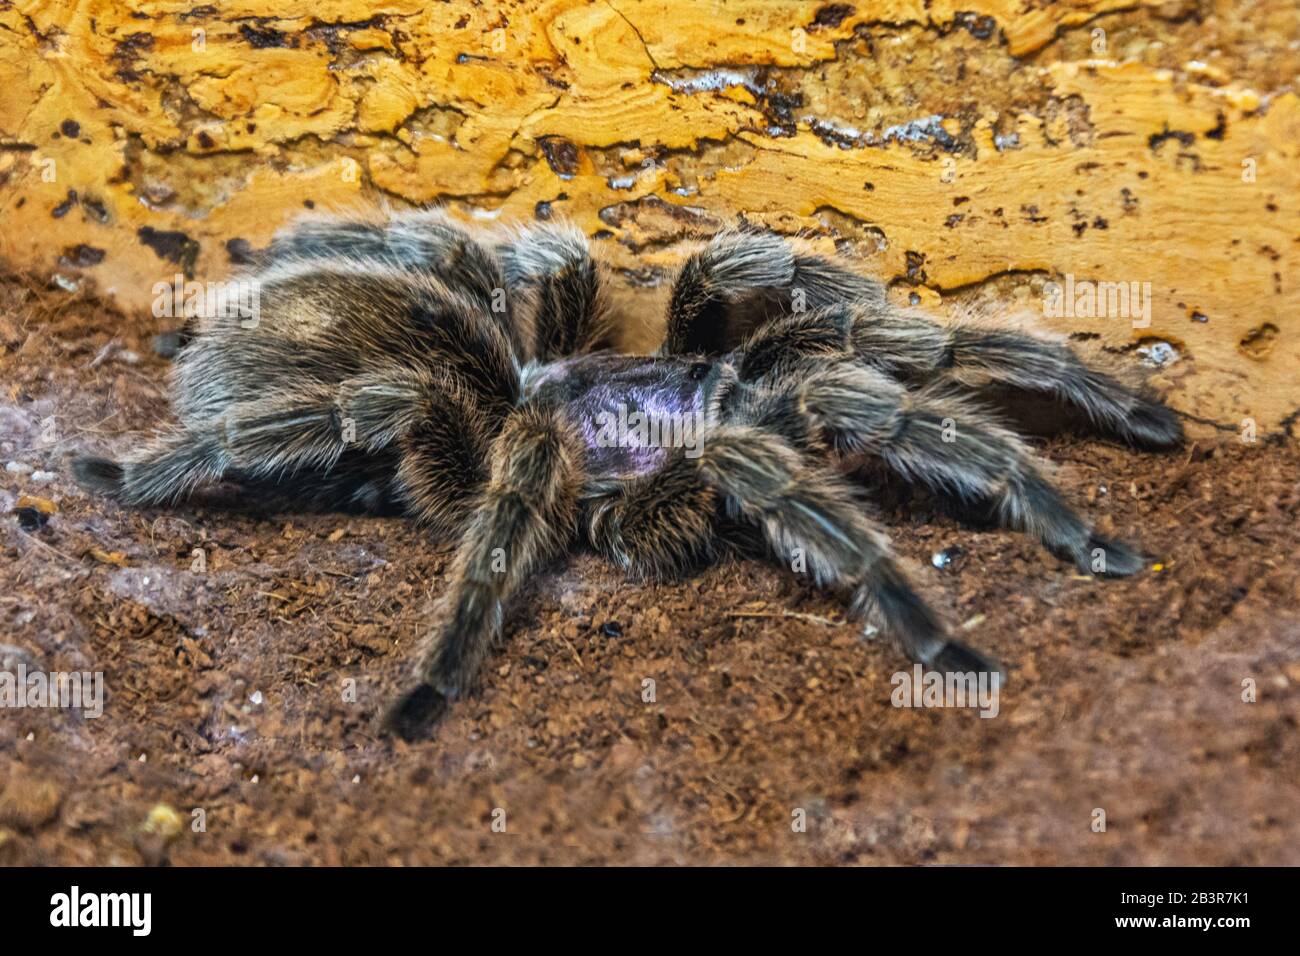 L'araignée terrantula de la terre d'Amérique du Sud Grammostola Aureostriata se trouve sur le terrain Banque D'Images